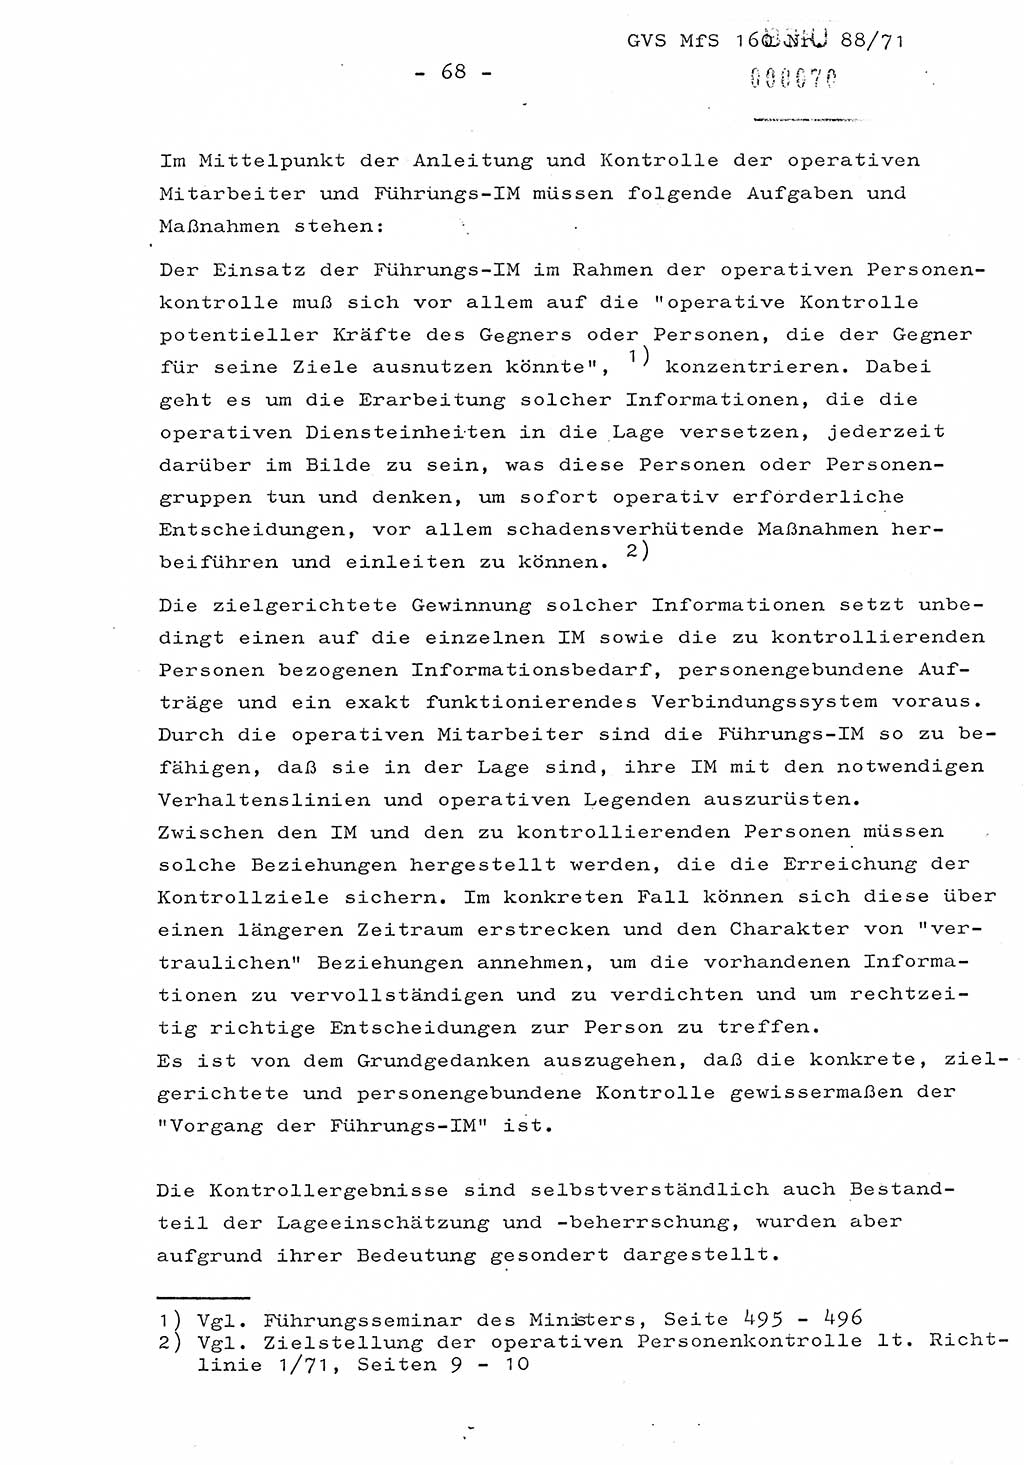 Dissertation Oberstleutnant Josef Schwarz (BV Schwerin), Major Fritz Amm (JHS), Hauptmann Peter Gräßler (JHS), Ministerium für Staatssicherheit (MfS) [Deutsche Demokratische Republik (DDR)], Juristische Hochschule (JHS), Geheime Verschlußsache (GVS) 160-88/71, Potsdam 1972, Seite 68 (Diss. MfS DDR JHS GVS 160-88/71 1972, S. 68)